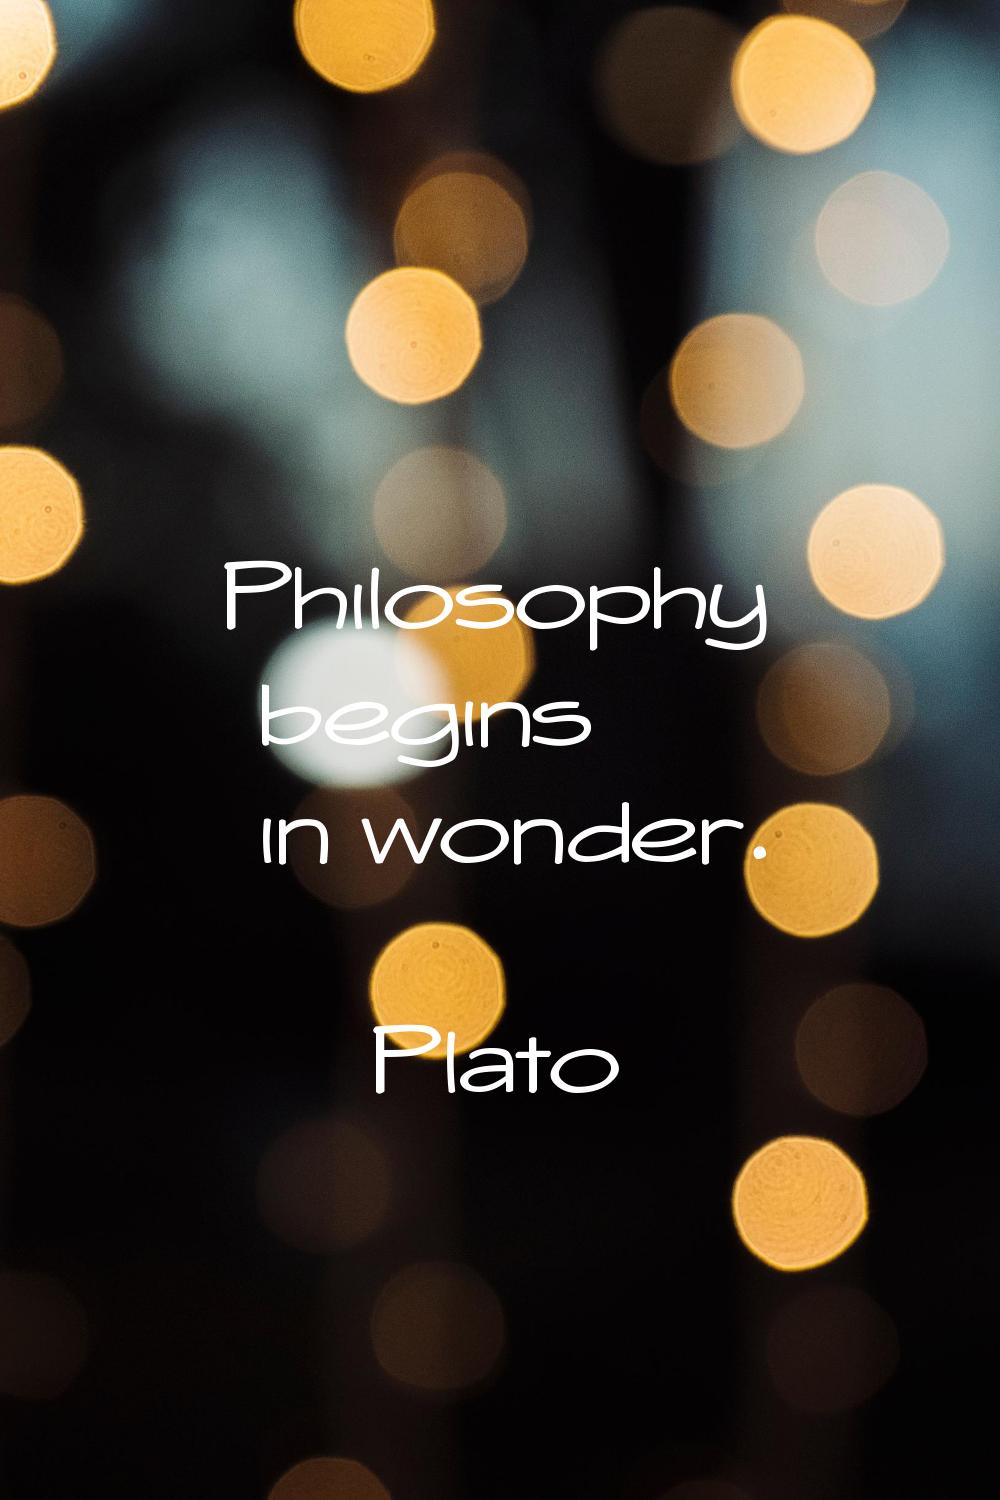 Philosophy begins in wonder.